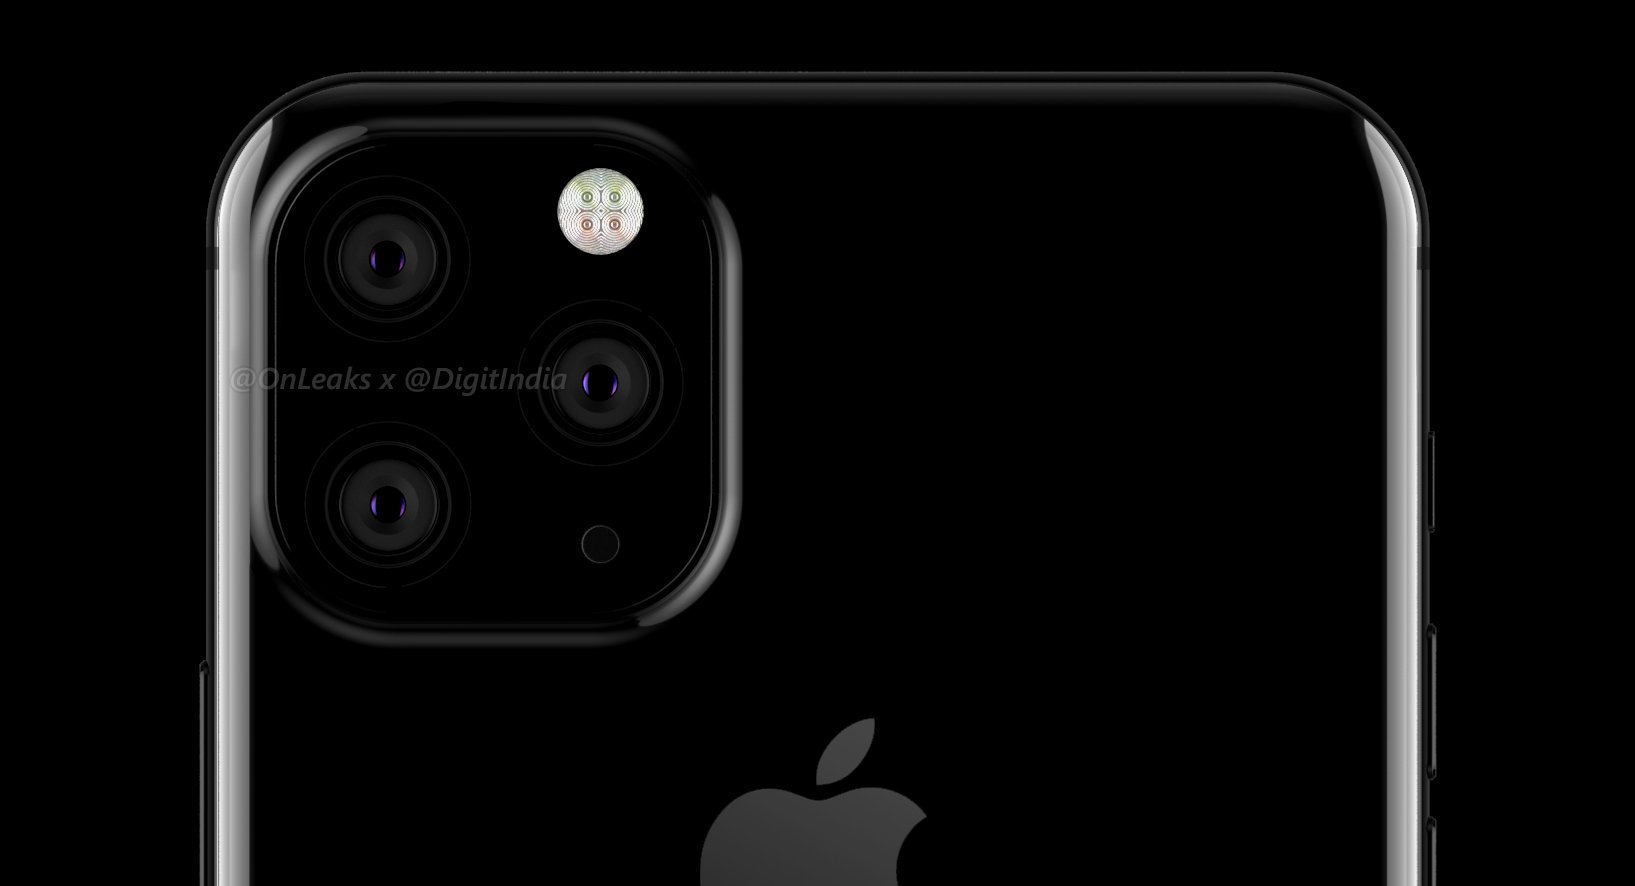 Üç arka kamera ile gelmesi beklenen iPhone 11'in yeni çizimleri ortaya çıktı